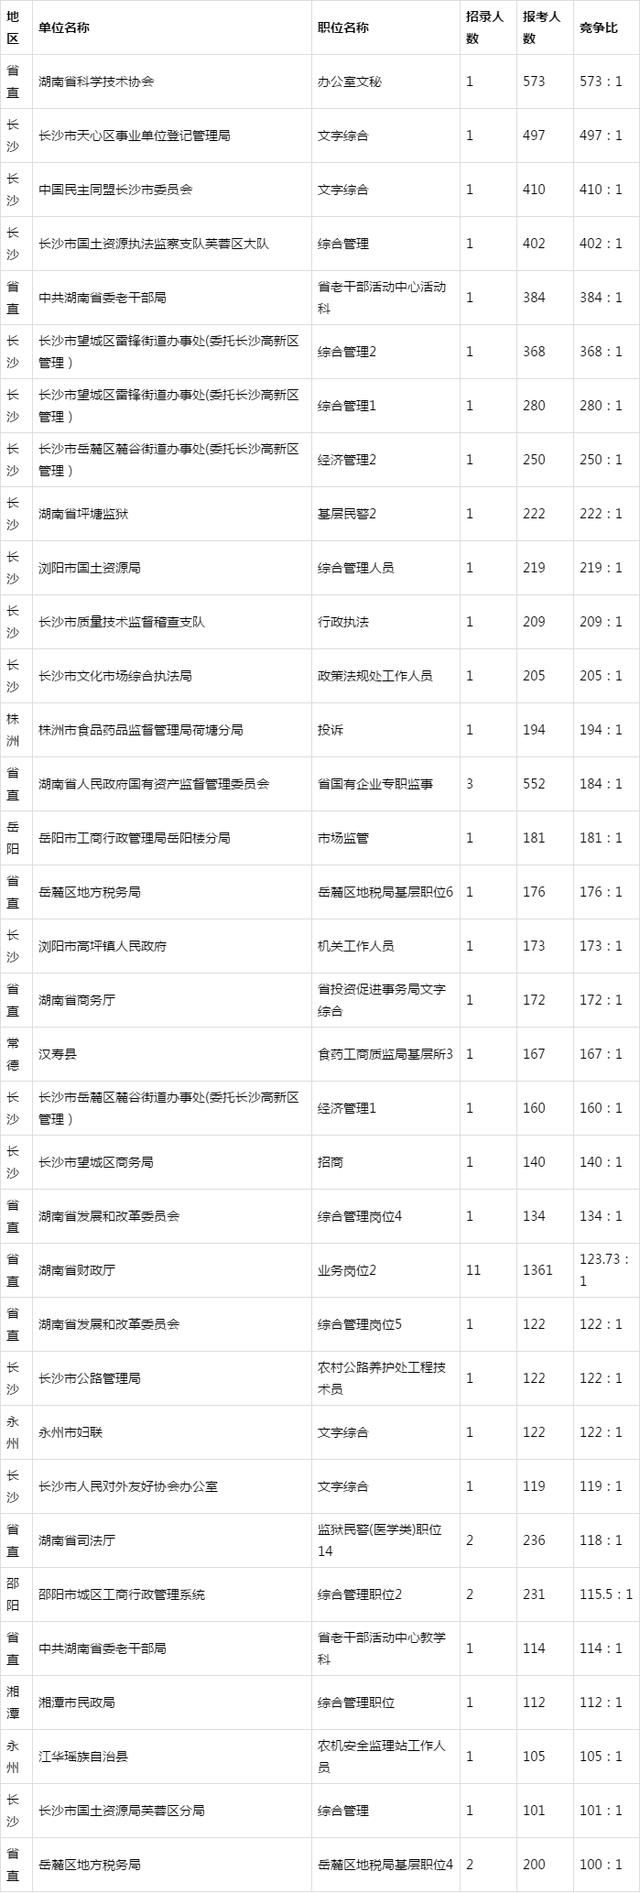 2019湖南省考职位即将发布,看看去年热门岗位